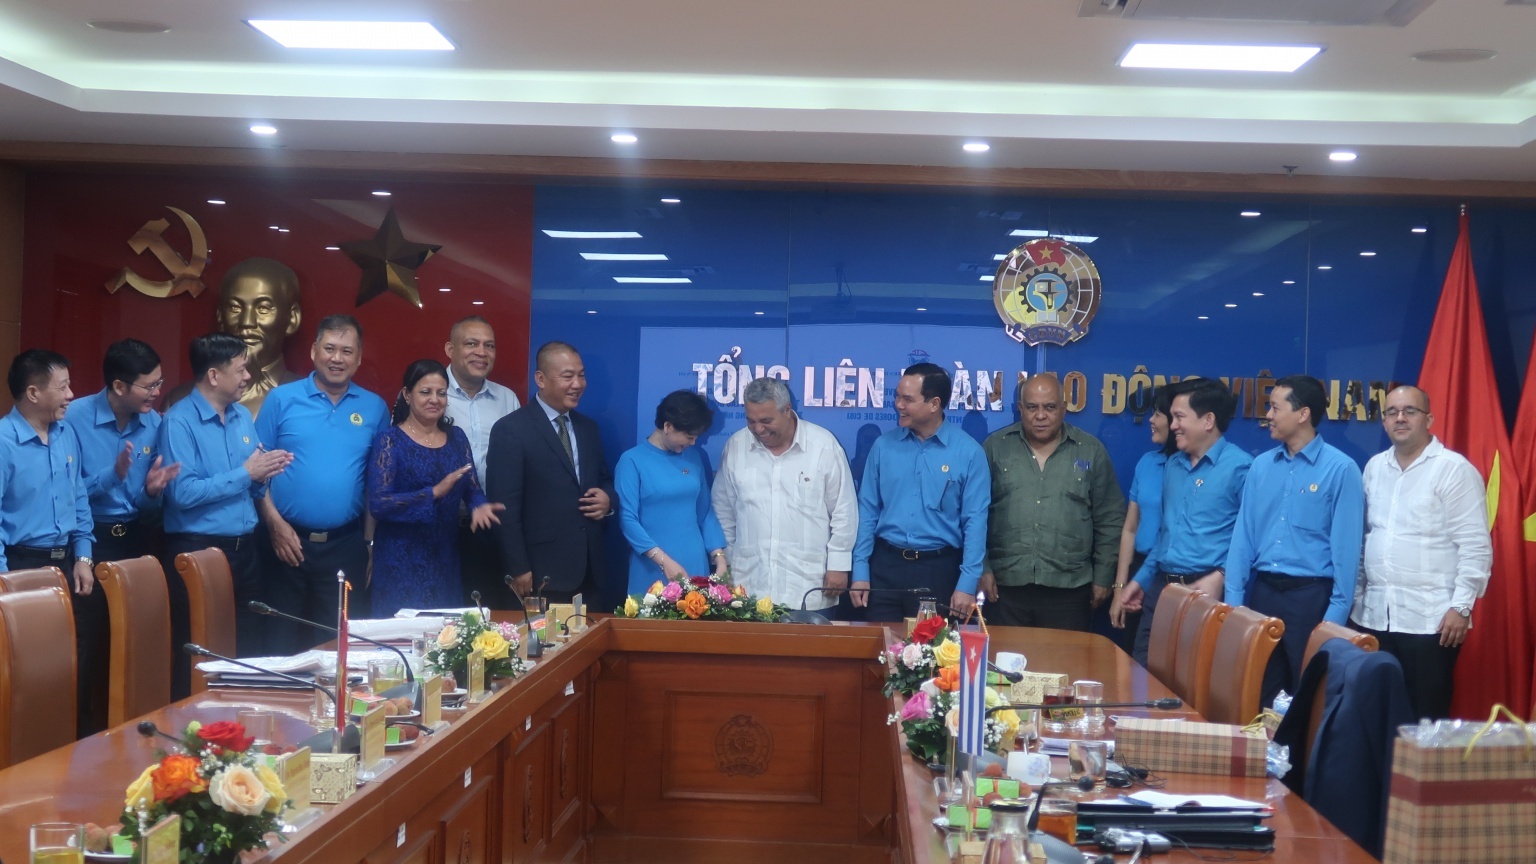 Tổng LĐLĐ Việt Nam sẽ tăng cường trao đổi hơn nữa các hoạt động công đoàn với Cuba